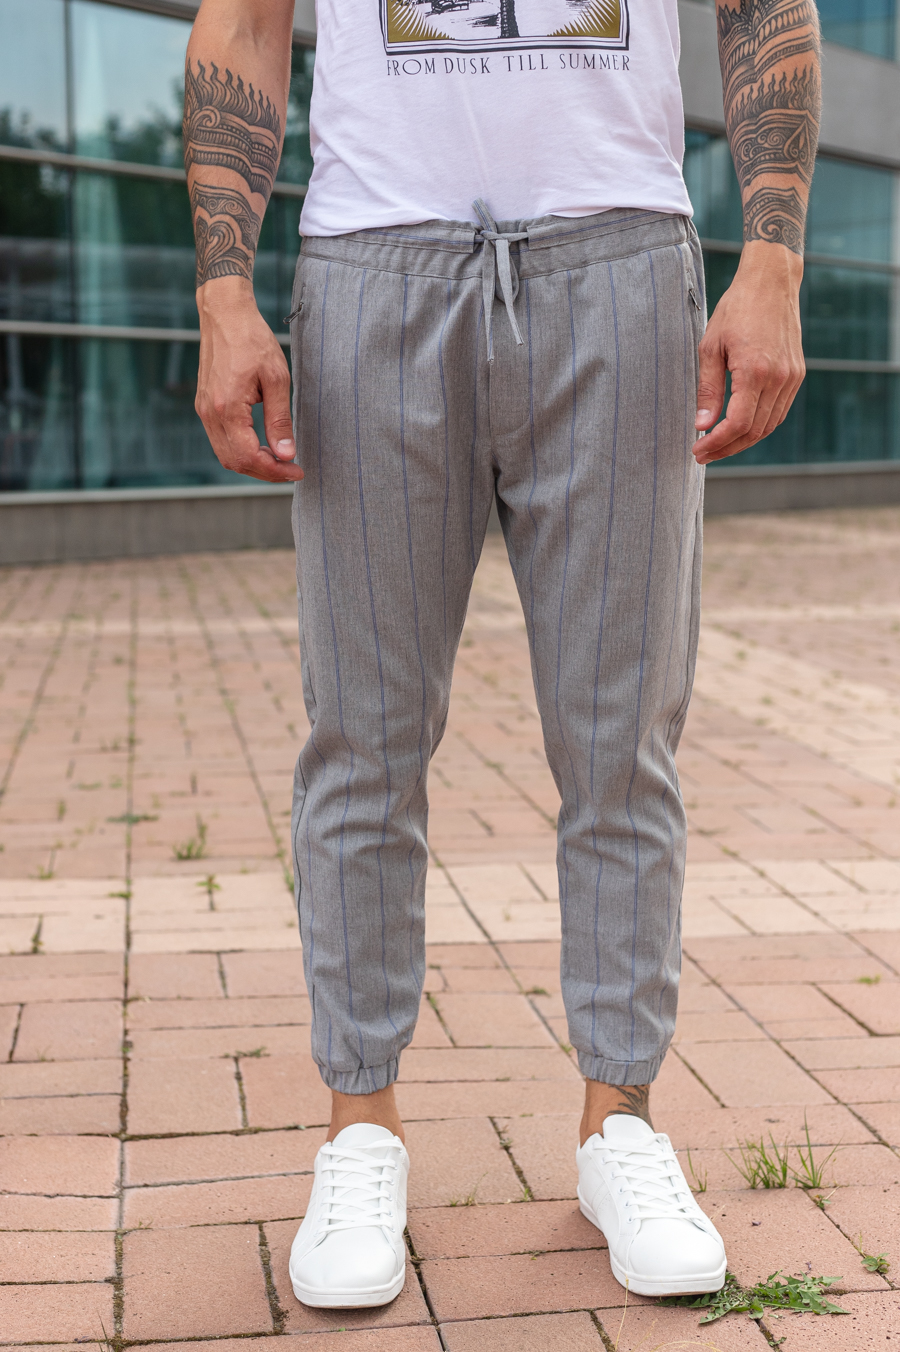 Мужские брюки на завязках. Арт.: 3913 – купить в магазине мужской одеждыSmartcasuals